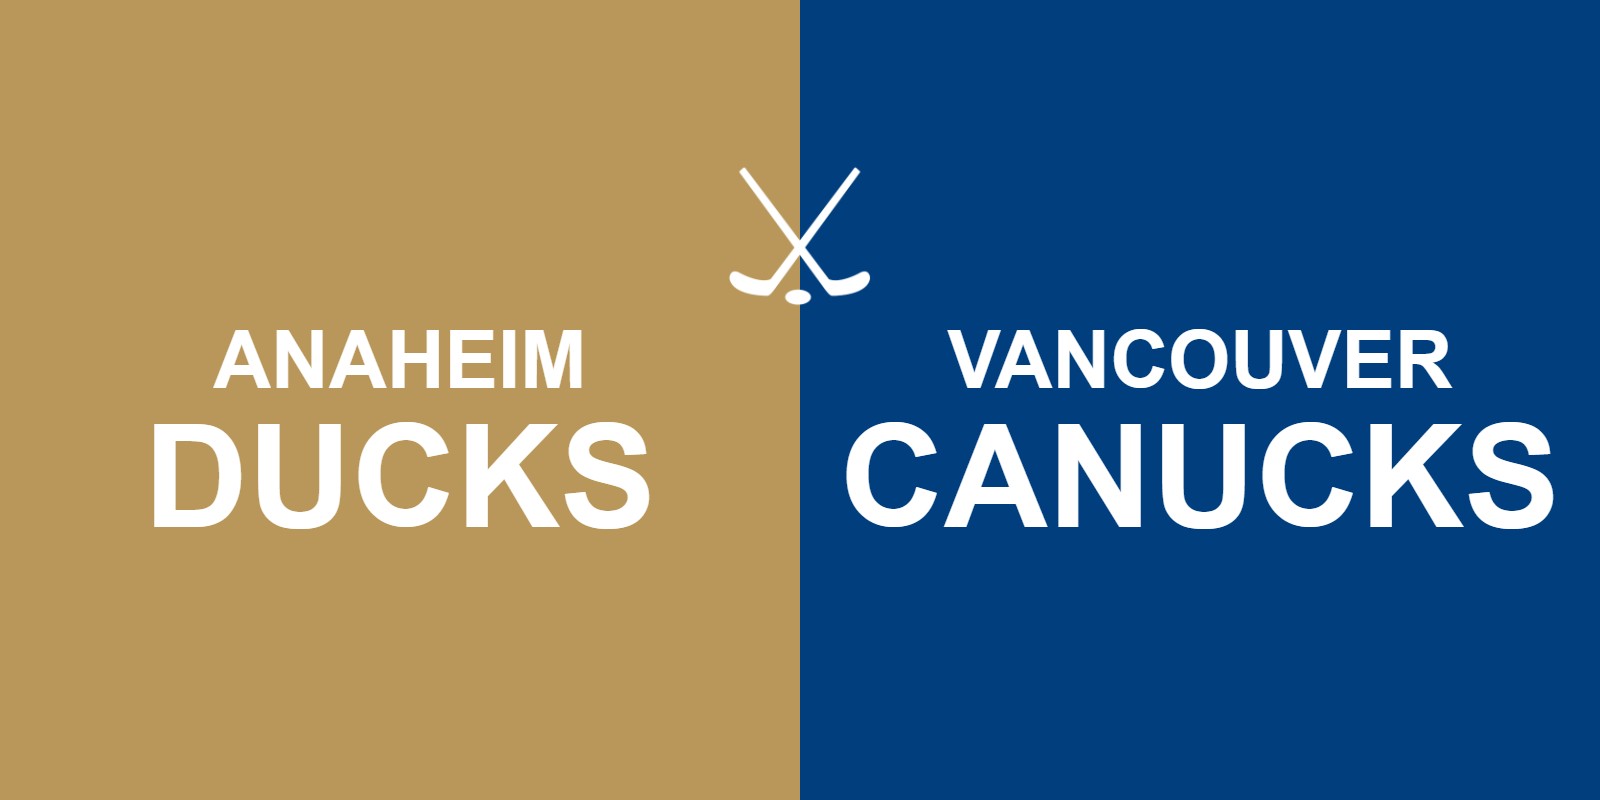 Ducks vs Canucks